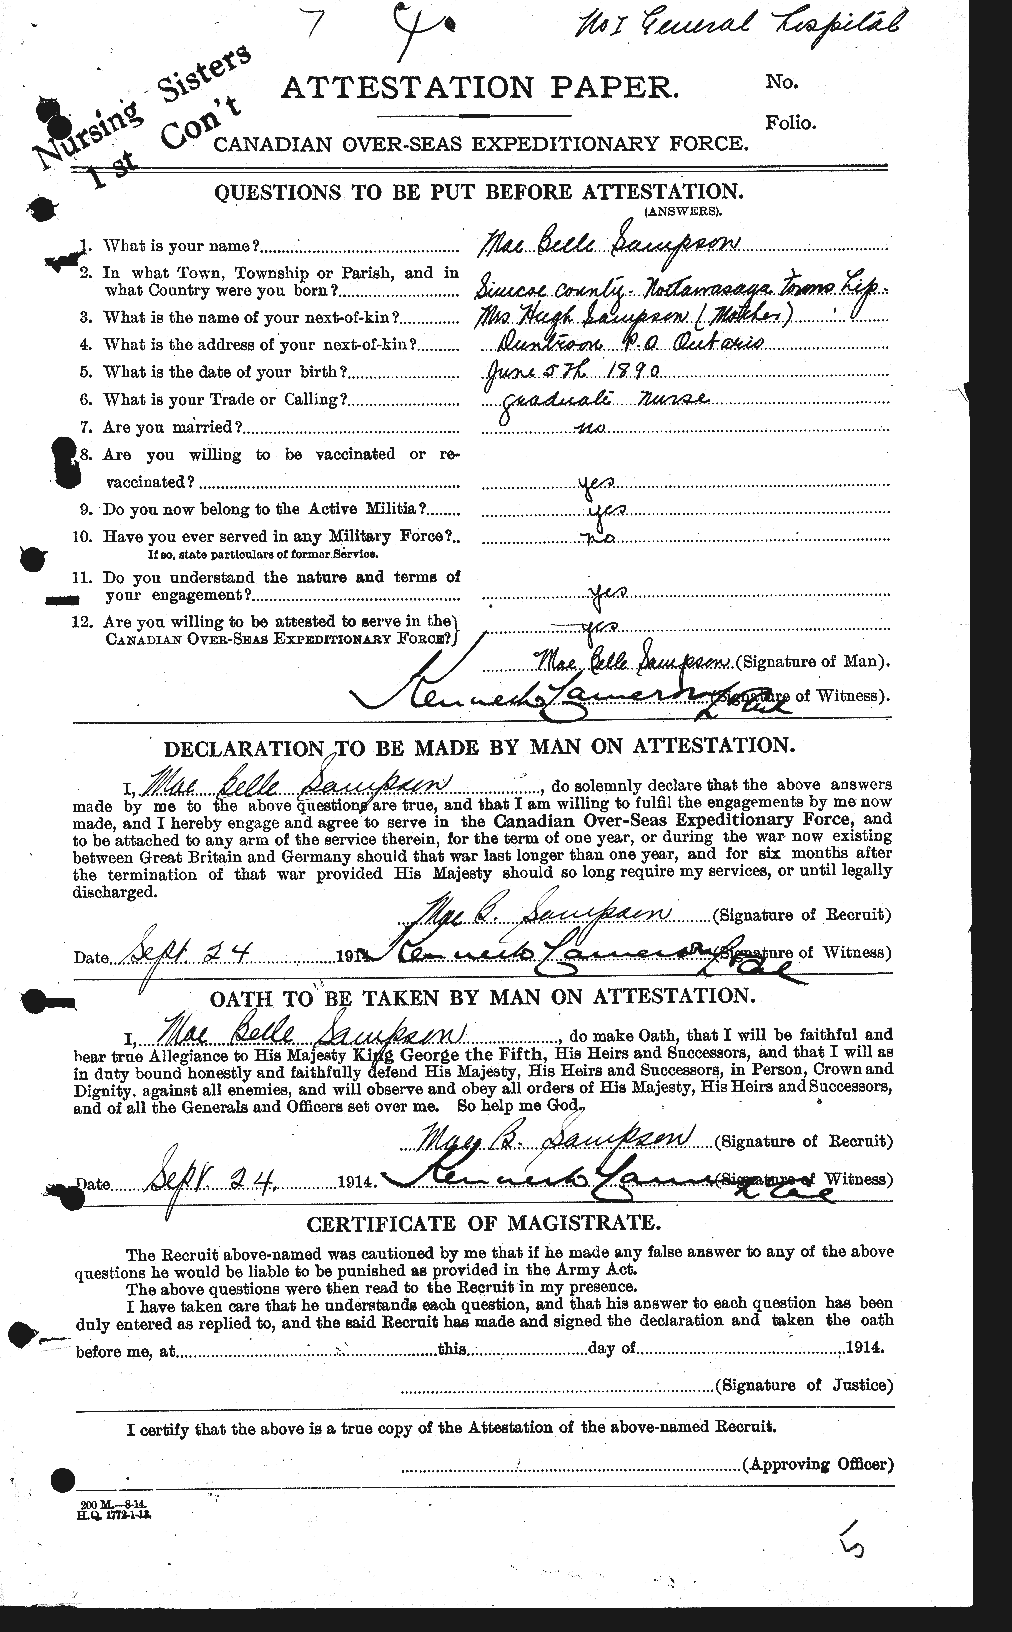 Dossiers du Personnel de la Première Guerre mondiale - CEC 237317a